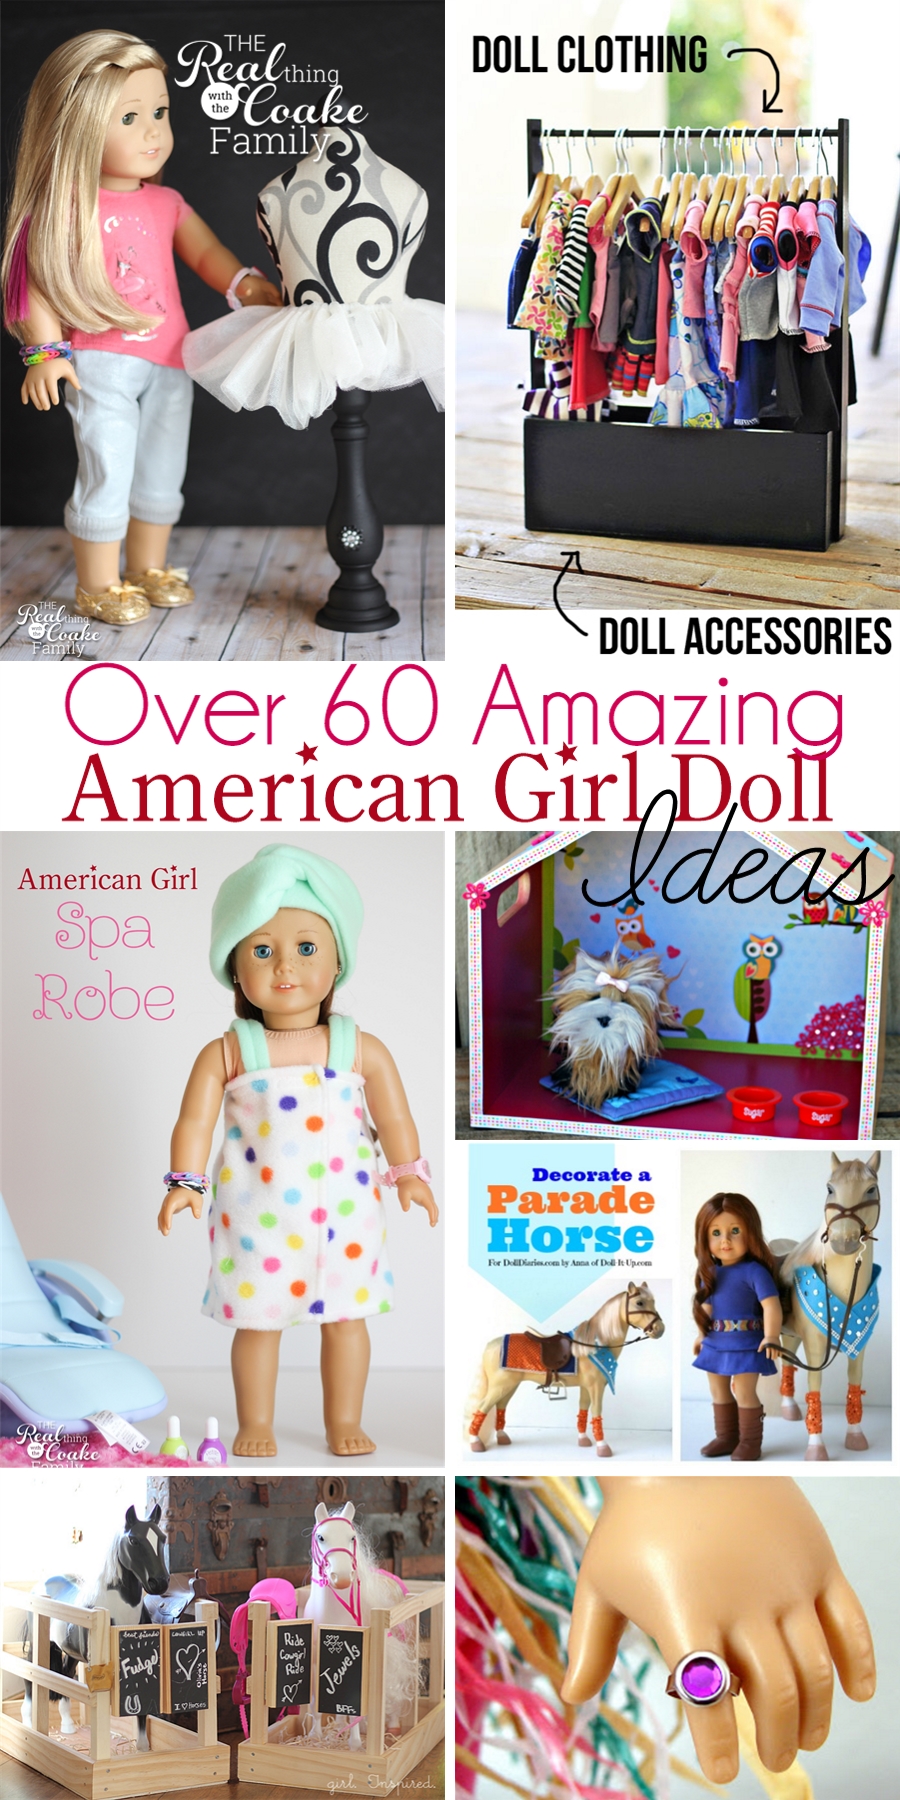 [Image: American-Girl-Doll-Fun1.jpg]